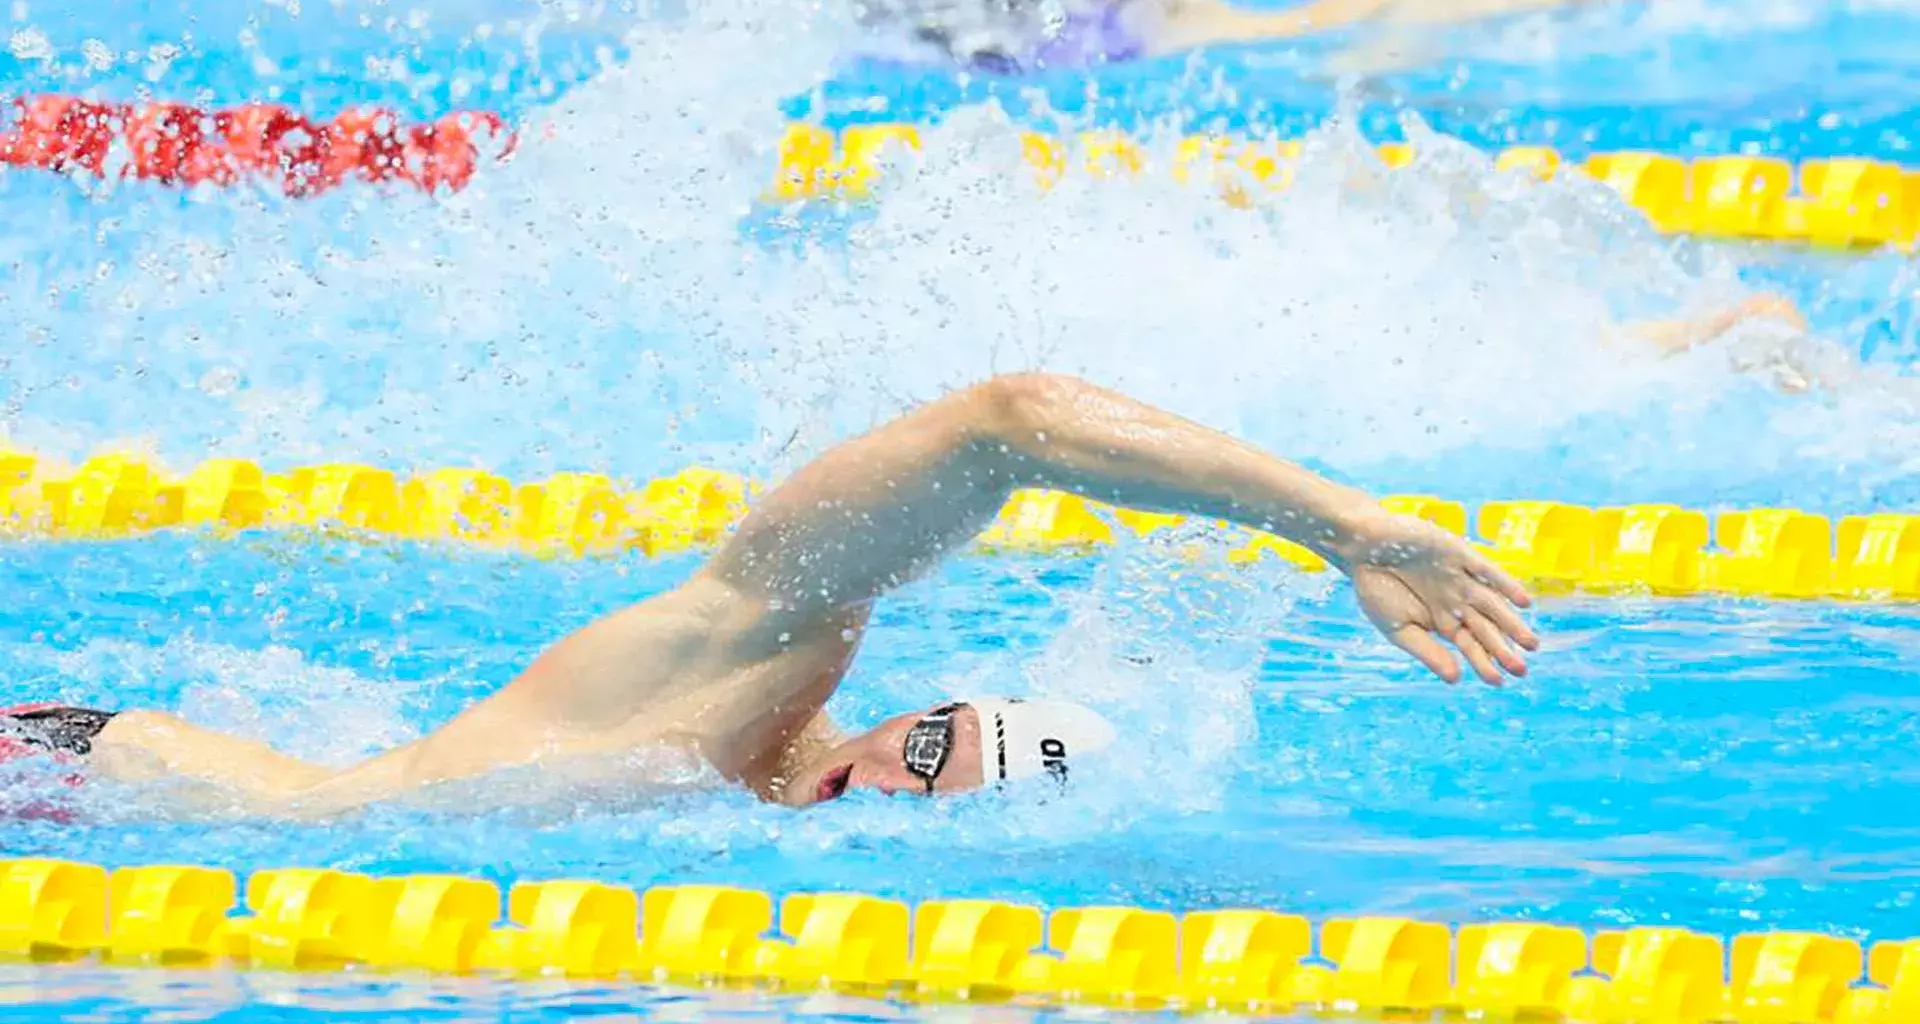 Dos egresados del Tec Guadalajara participaron en el campeonato mundial de natación.